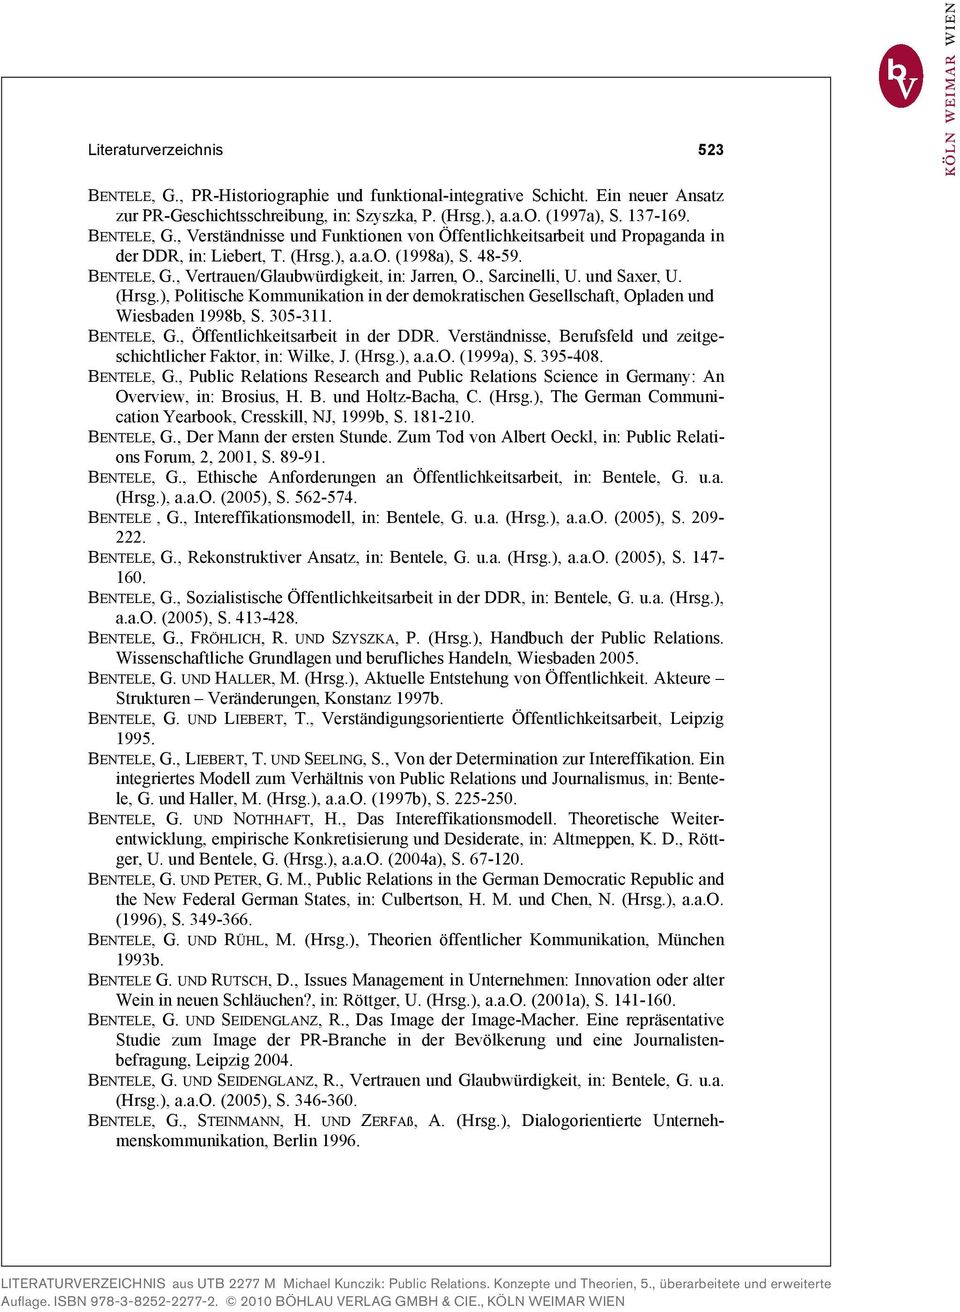 , Sarcinelli, U. und Saxer, U. (Hrsg.), Politische Kommunikation in der demokratischen Gesellschaft, Opladen und Wiesbaden 1998b, S. 305-311. BENTELE, G., Öffentlichkeitsarbeit in der DDR.